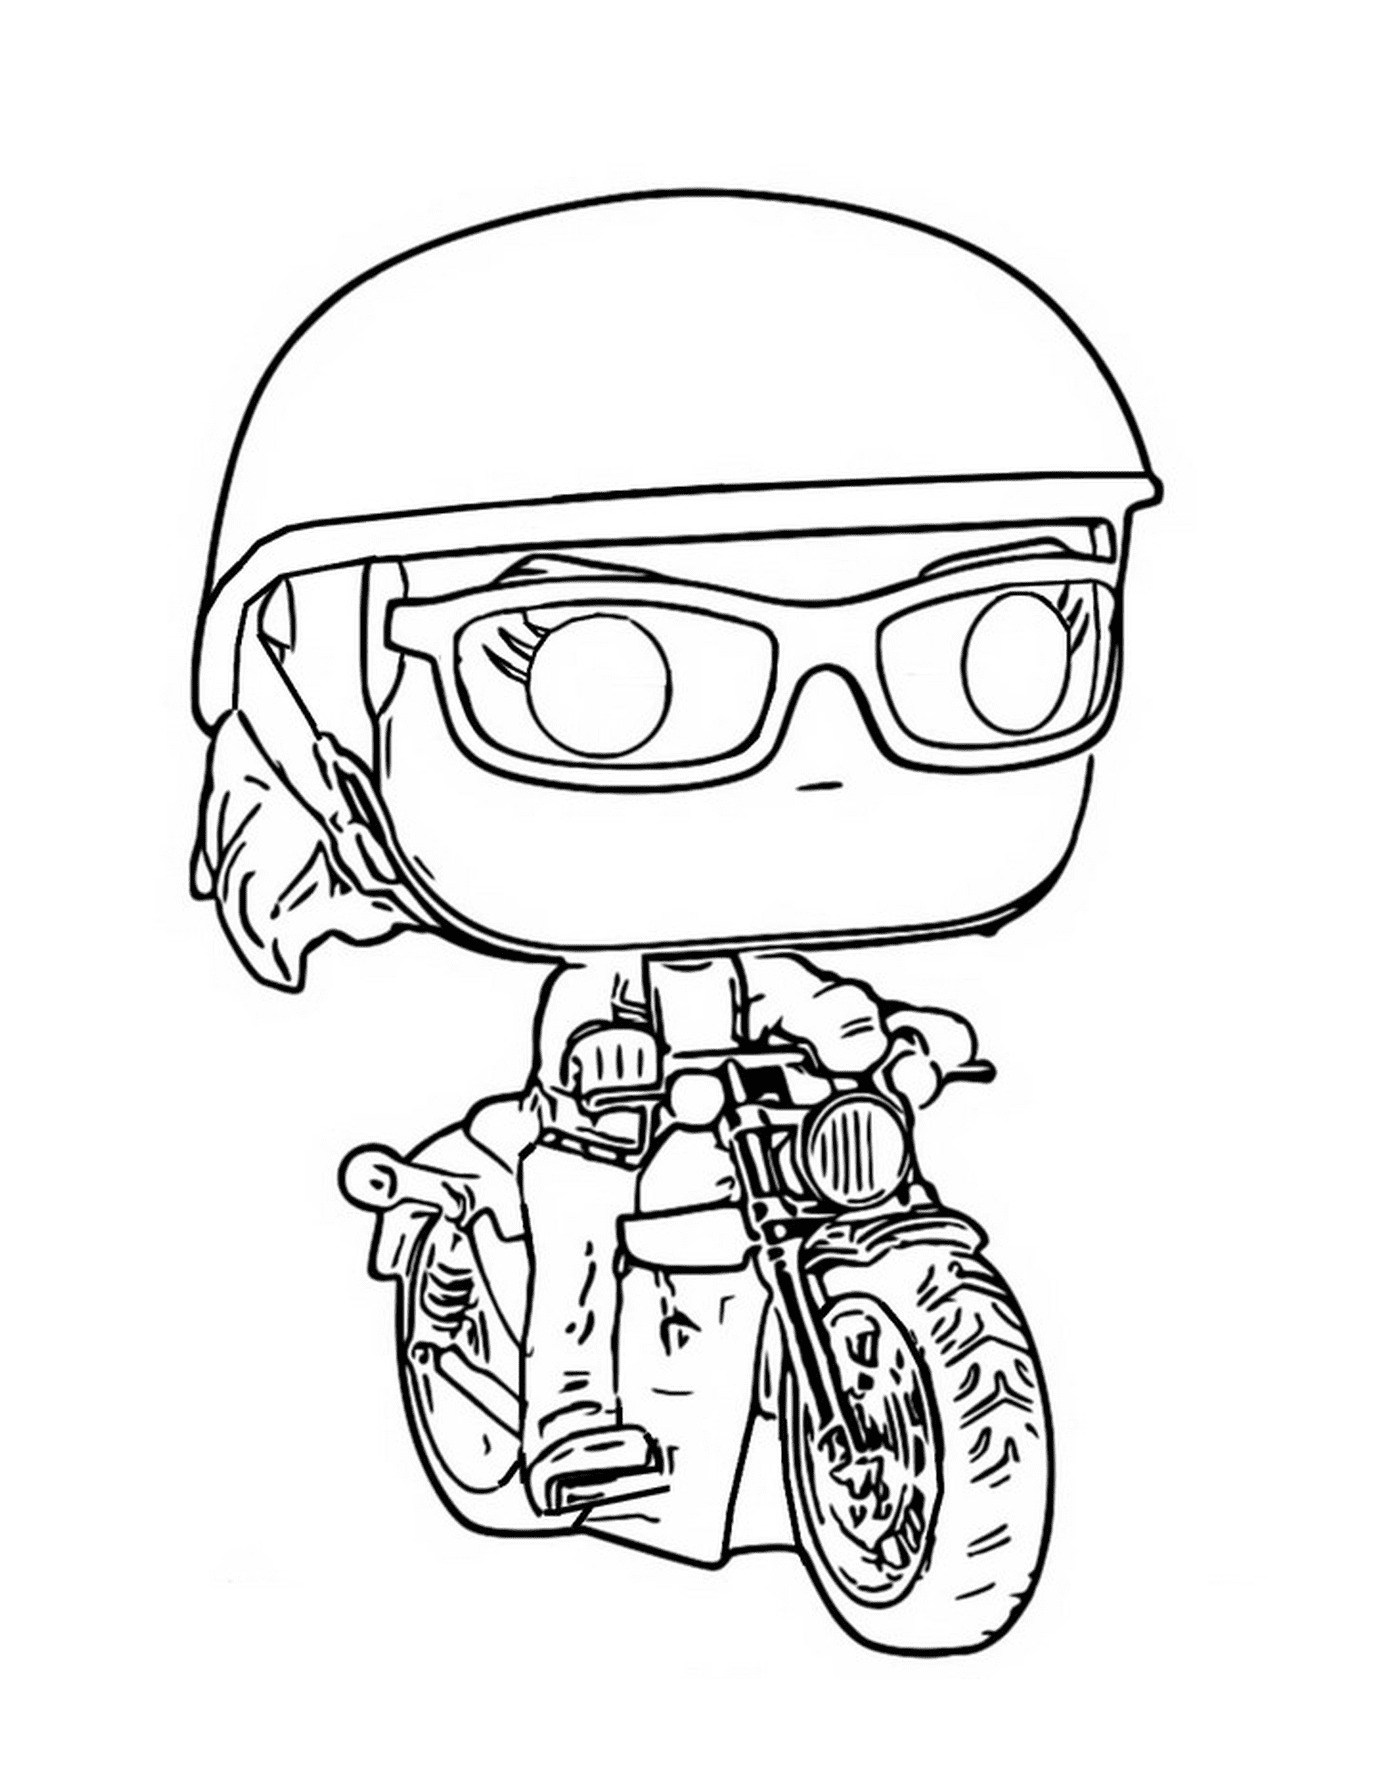  Carol Danvers en motocicleta 